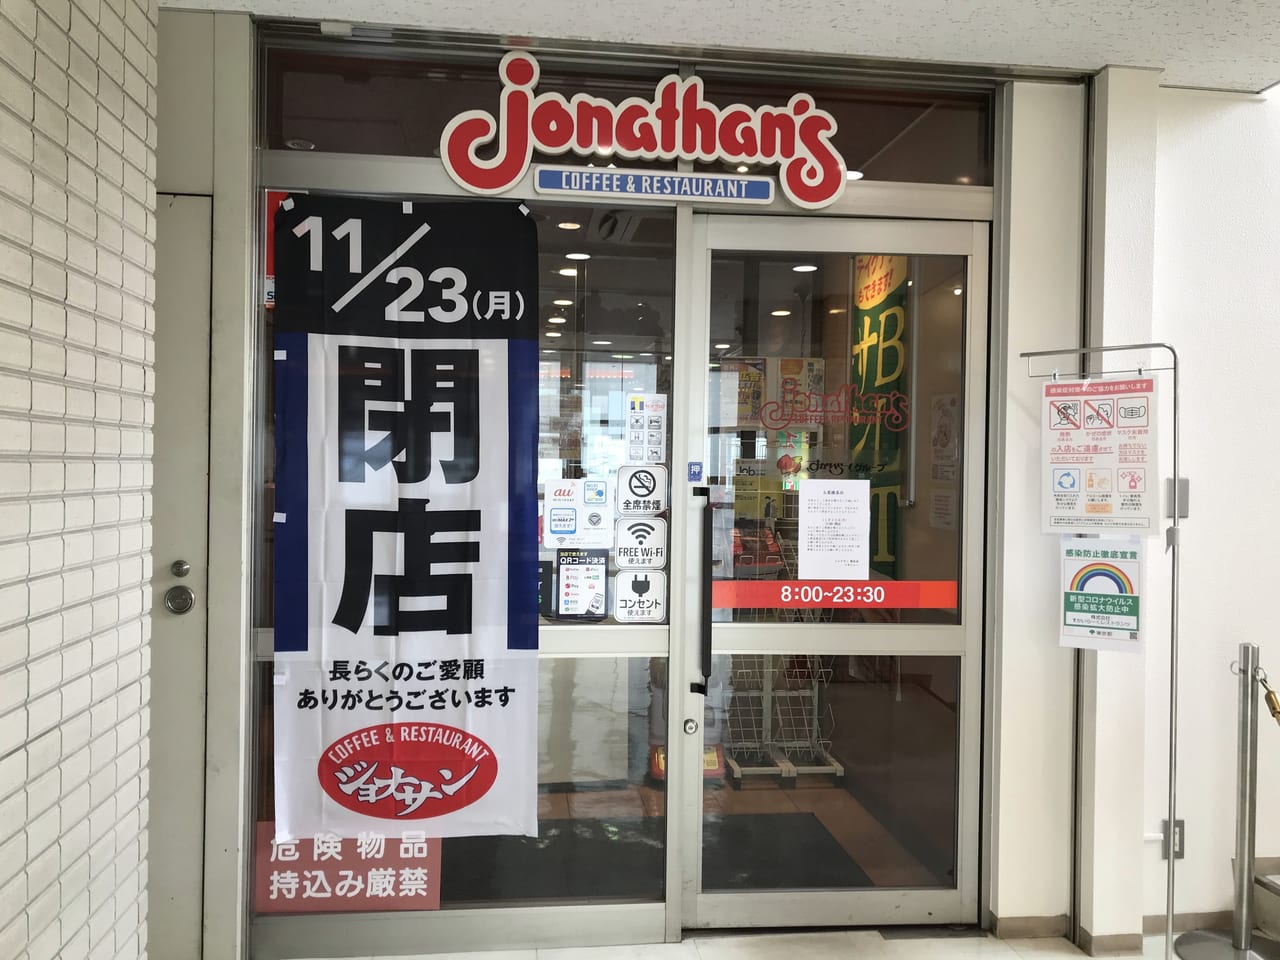 世田谷区 便利だったのに残念 ジョナサン駒沢店 が11月23日で閉店してしまいます 号外net 世田谷区